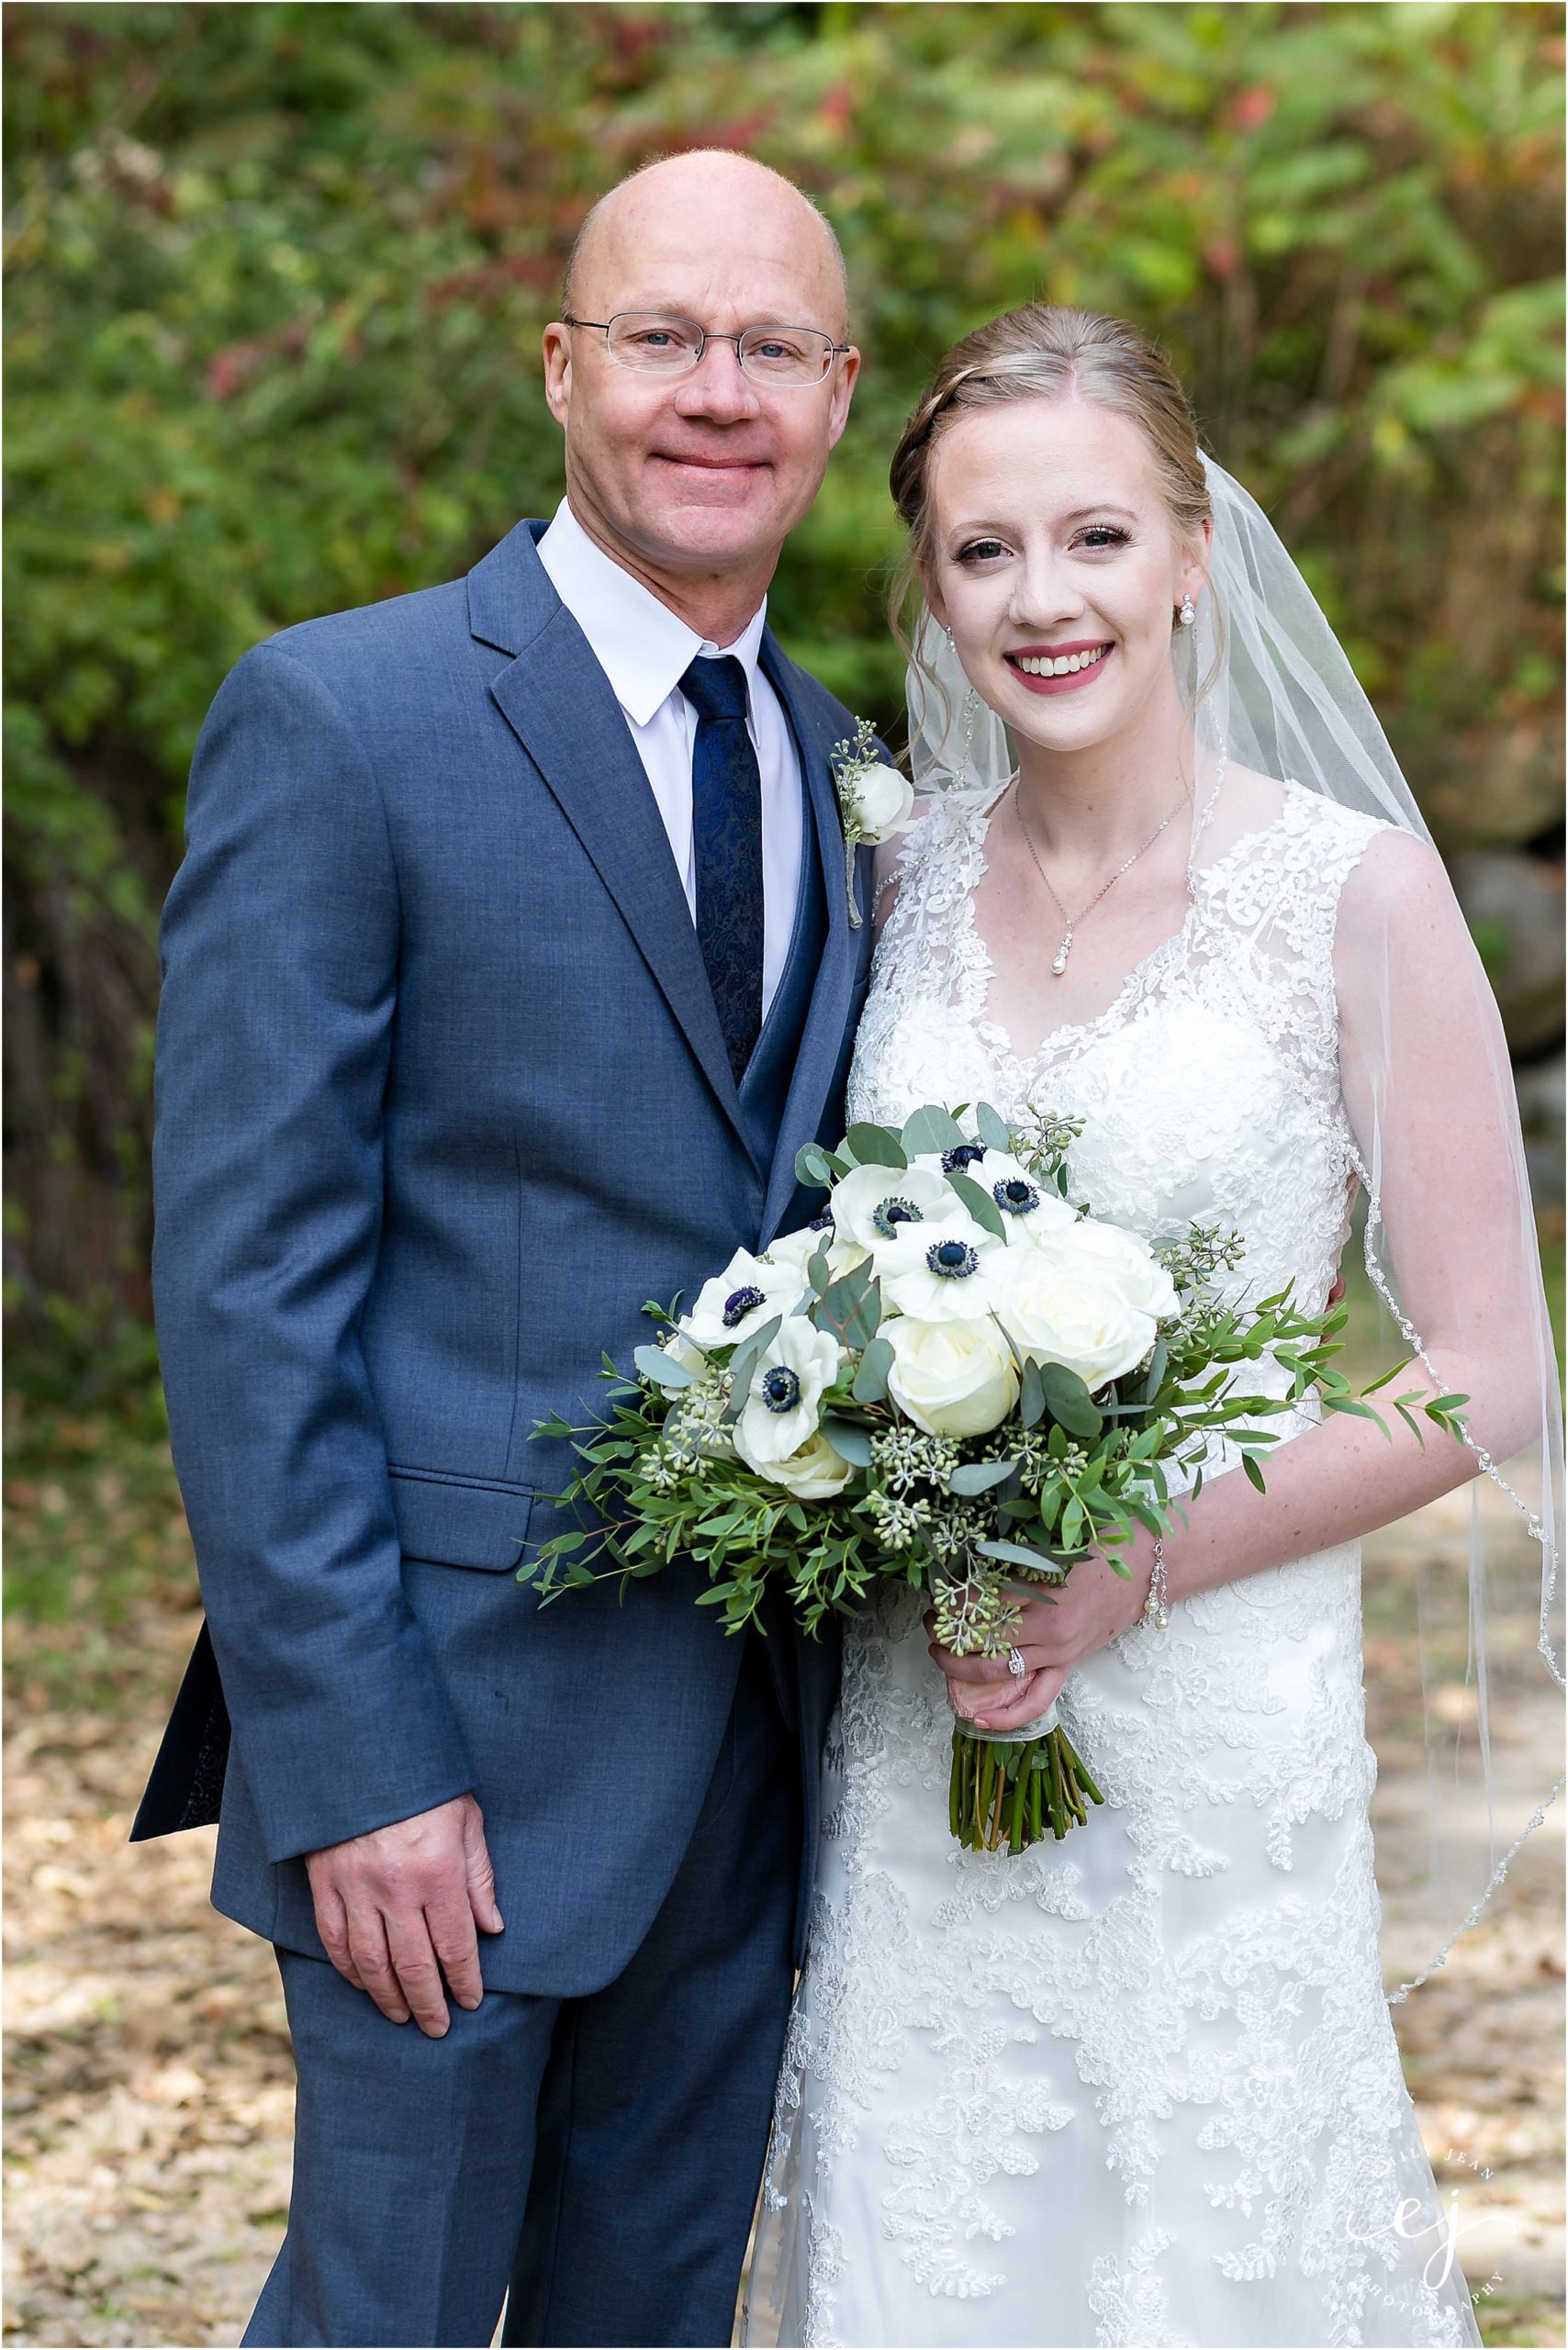 Portrait of bride with her dad at her wedding gray suit navy tie